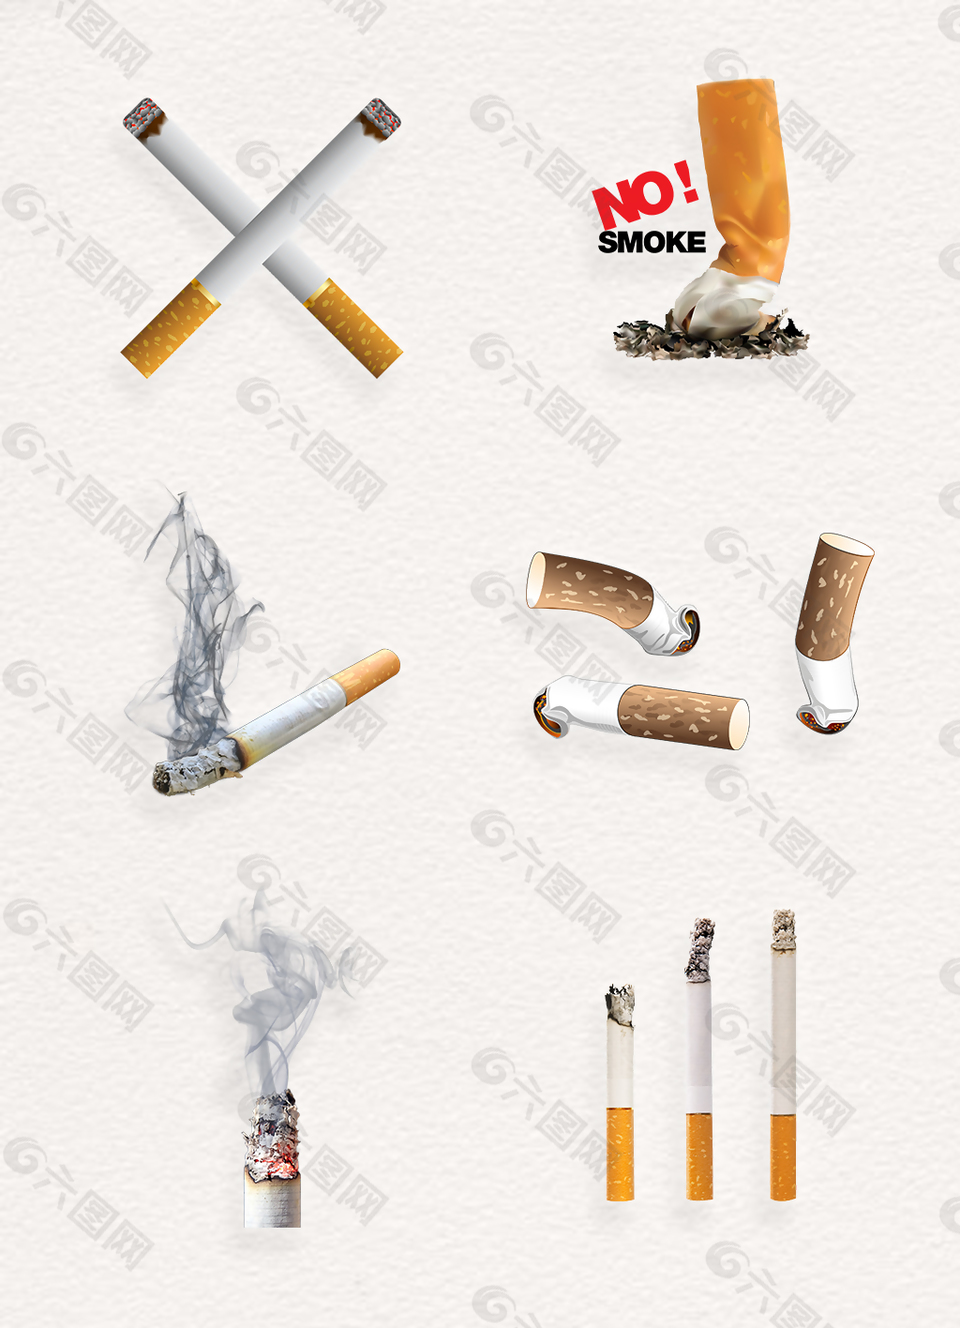 戒烟公益设计素材